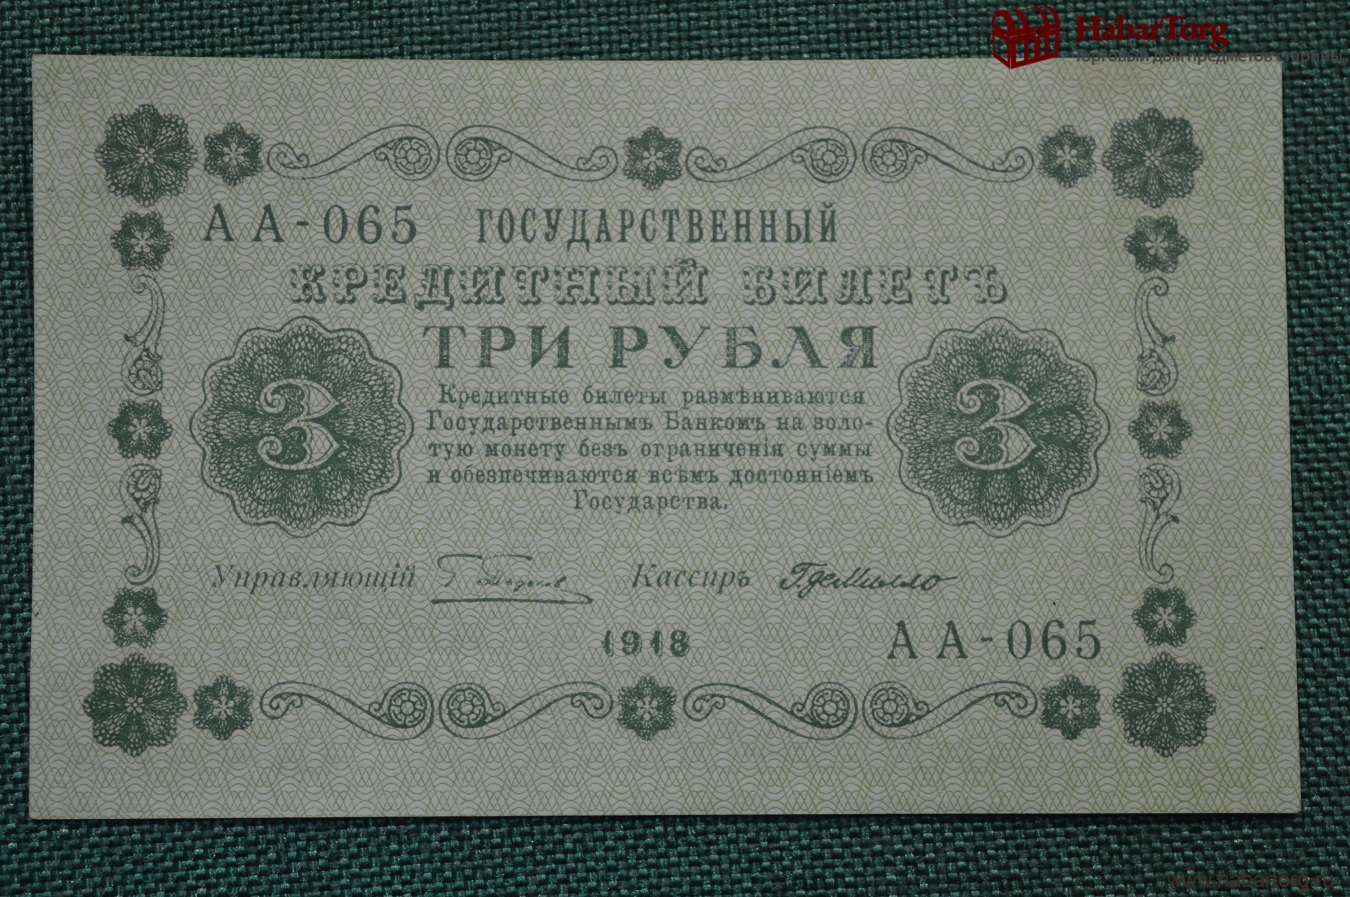 Простой как 3 рубля. 3 Рубля 1875 года государственный кредитный билет. Царские три рубля. 3 Рубля 1918. Государственный кредитный билет 1918 года.